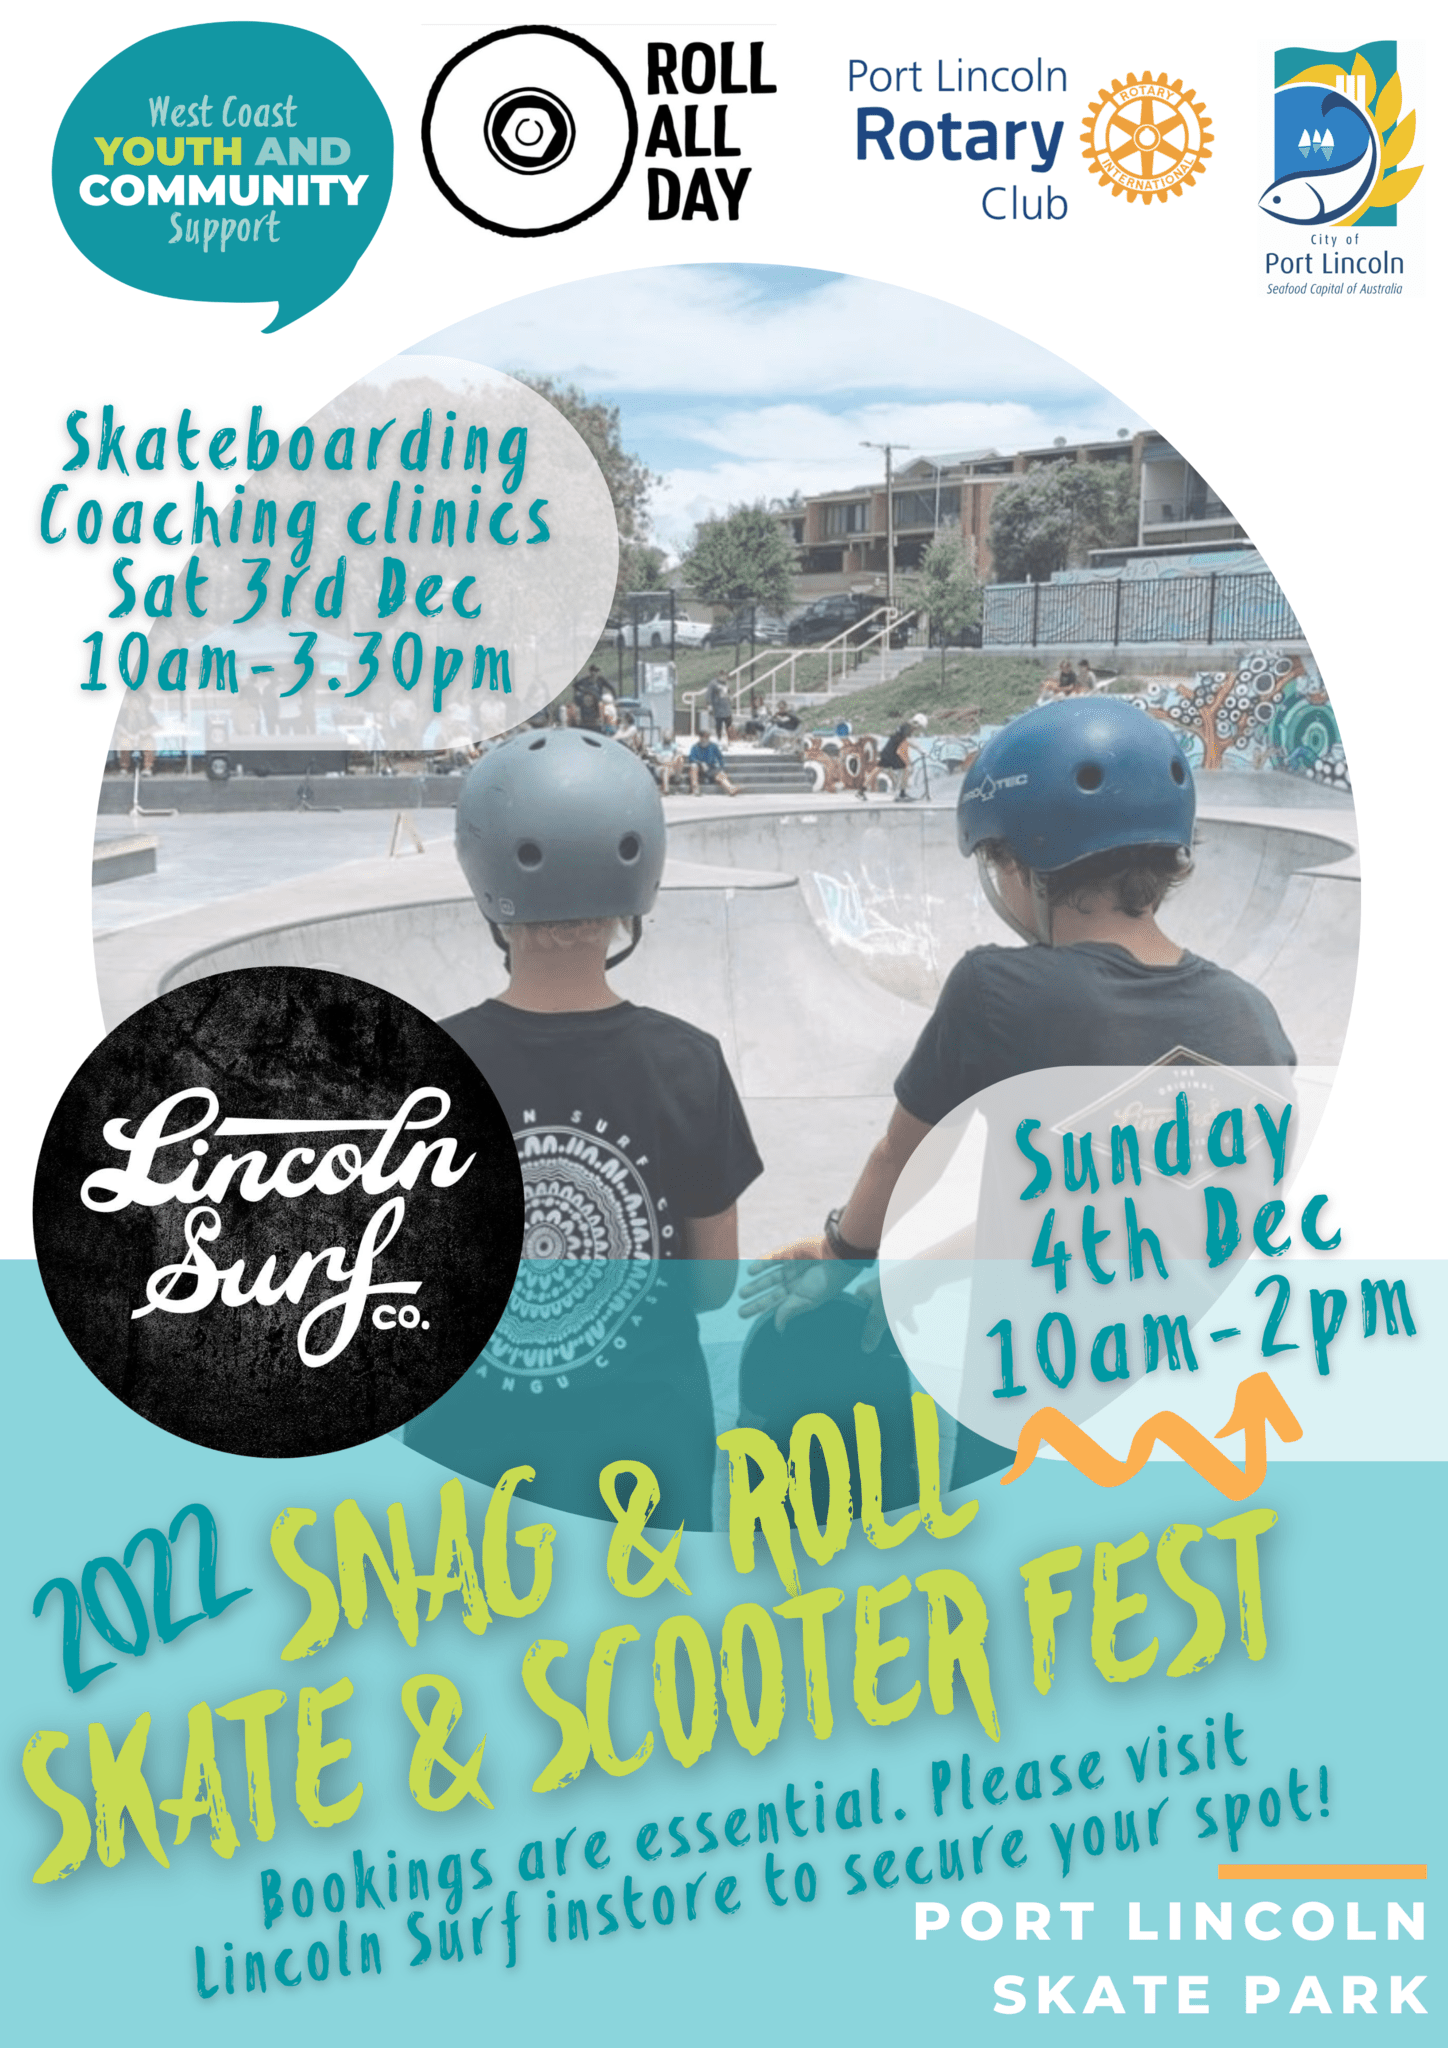 campingvogn Afskedige Bedre Snag & Roll Skate & Scooter Fest - Port Lincoln, South Australia